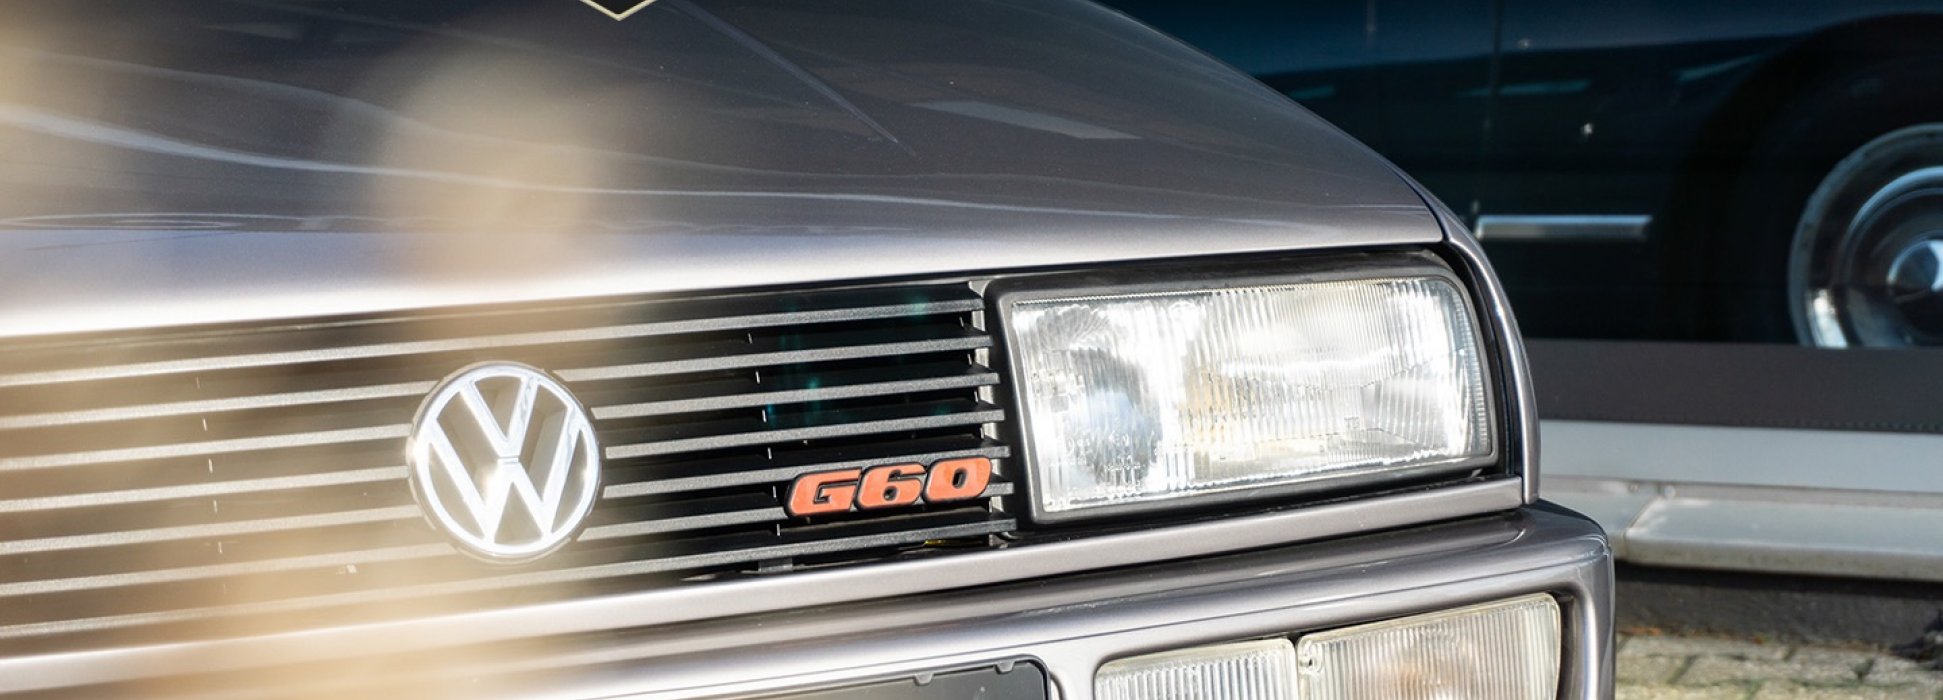 Volkswagen Corrado G60 20